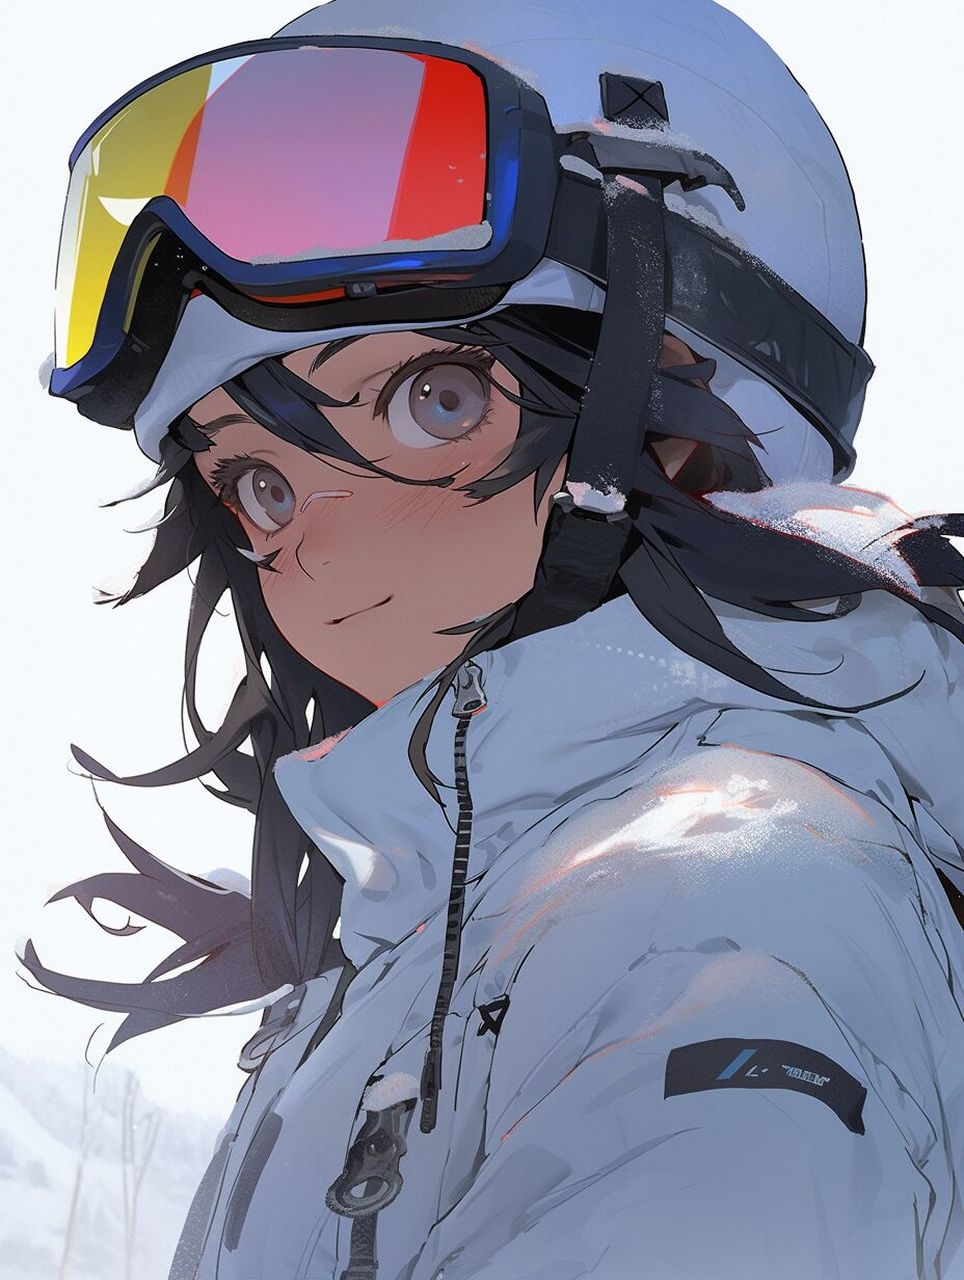 日本滑雪动漫图片